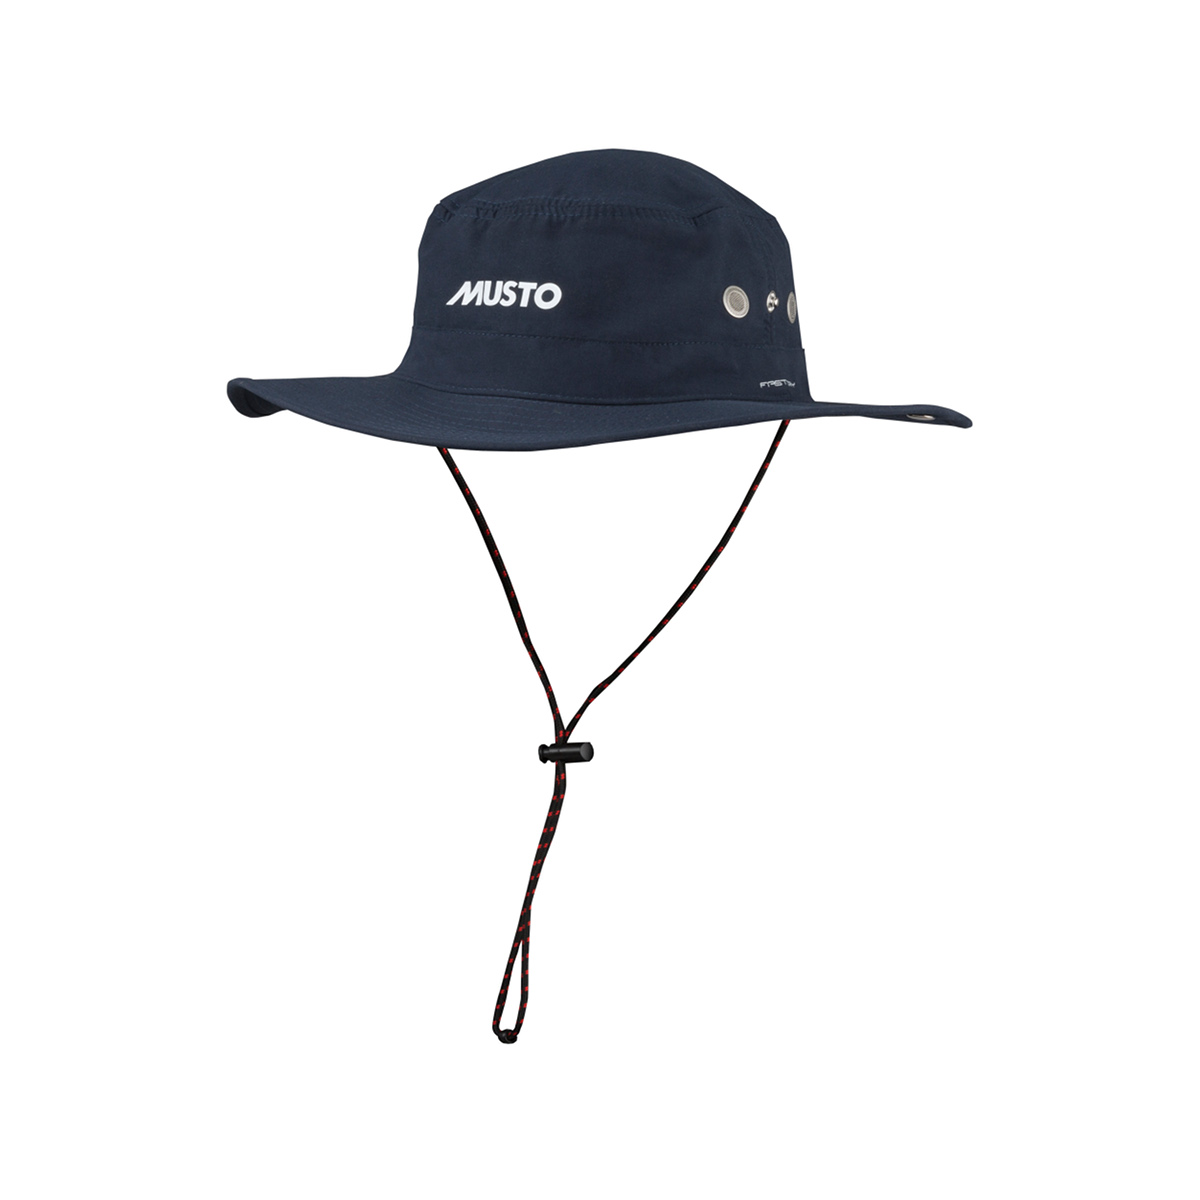 Musto Evolution FD Brimmed chapeau de voile bleu marine, taille M